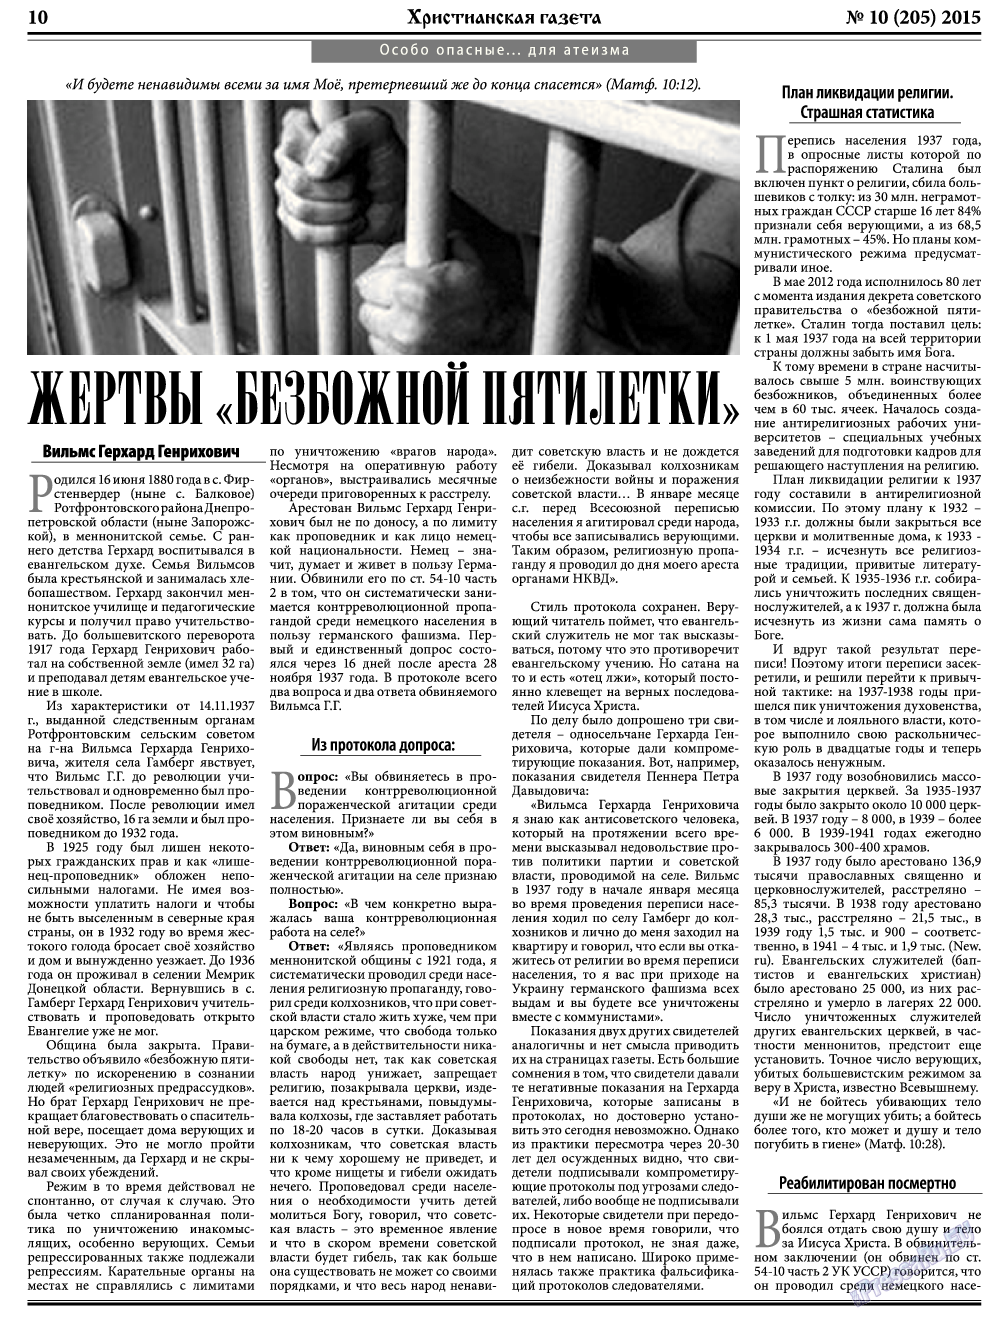 Христианская газета, газета. 2015 №10 стр.10